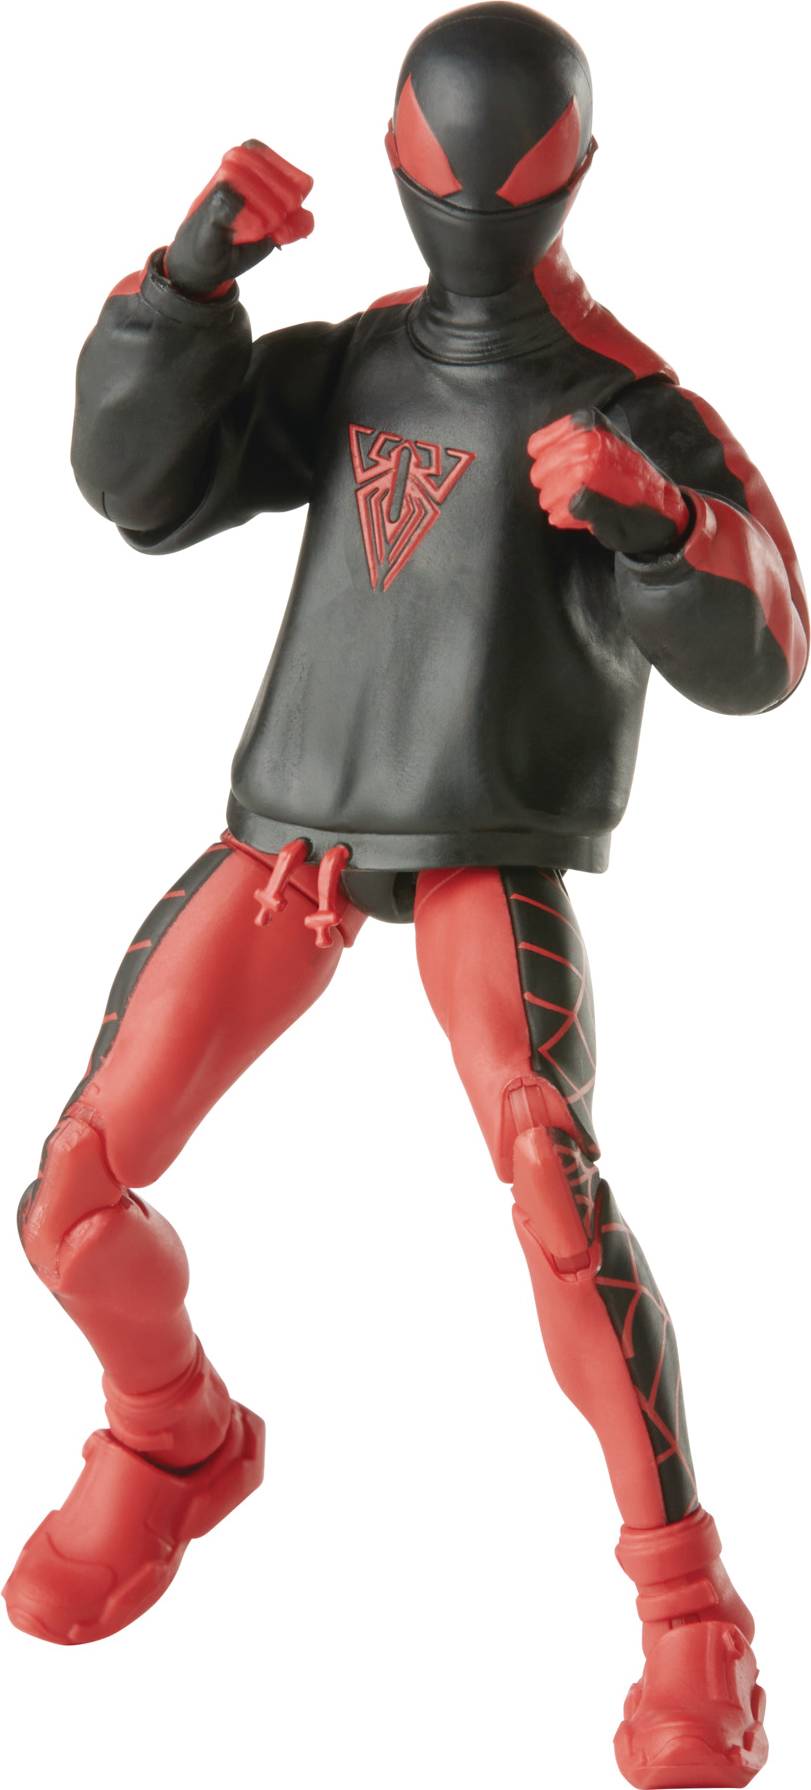 Achetez Figurine Marvel Legends Retro AF15 SPIDER-MAN Af